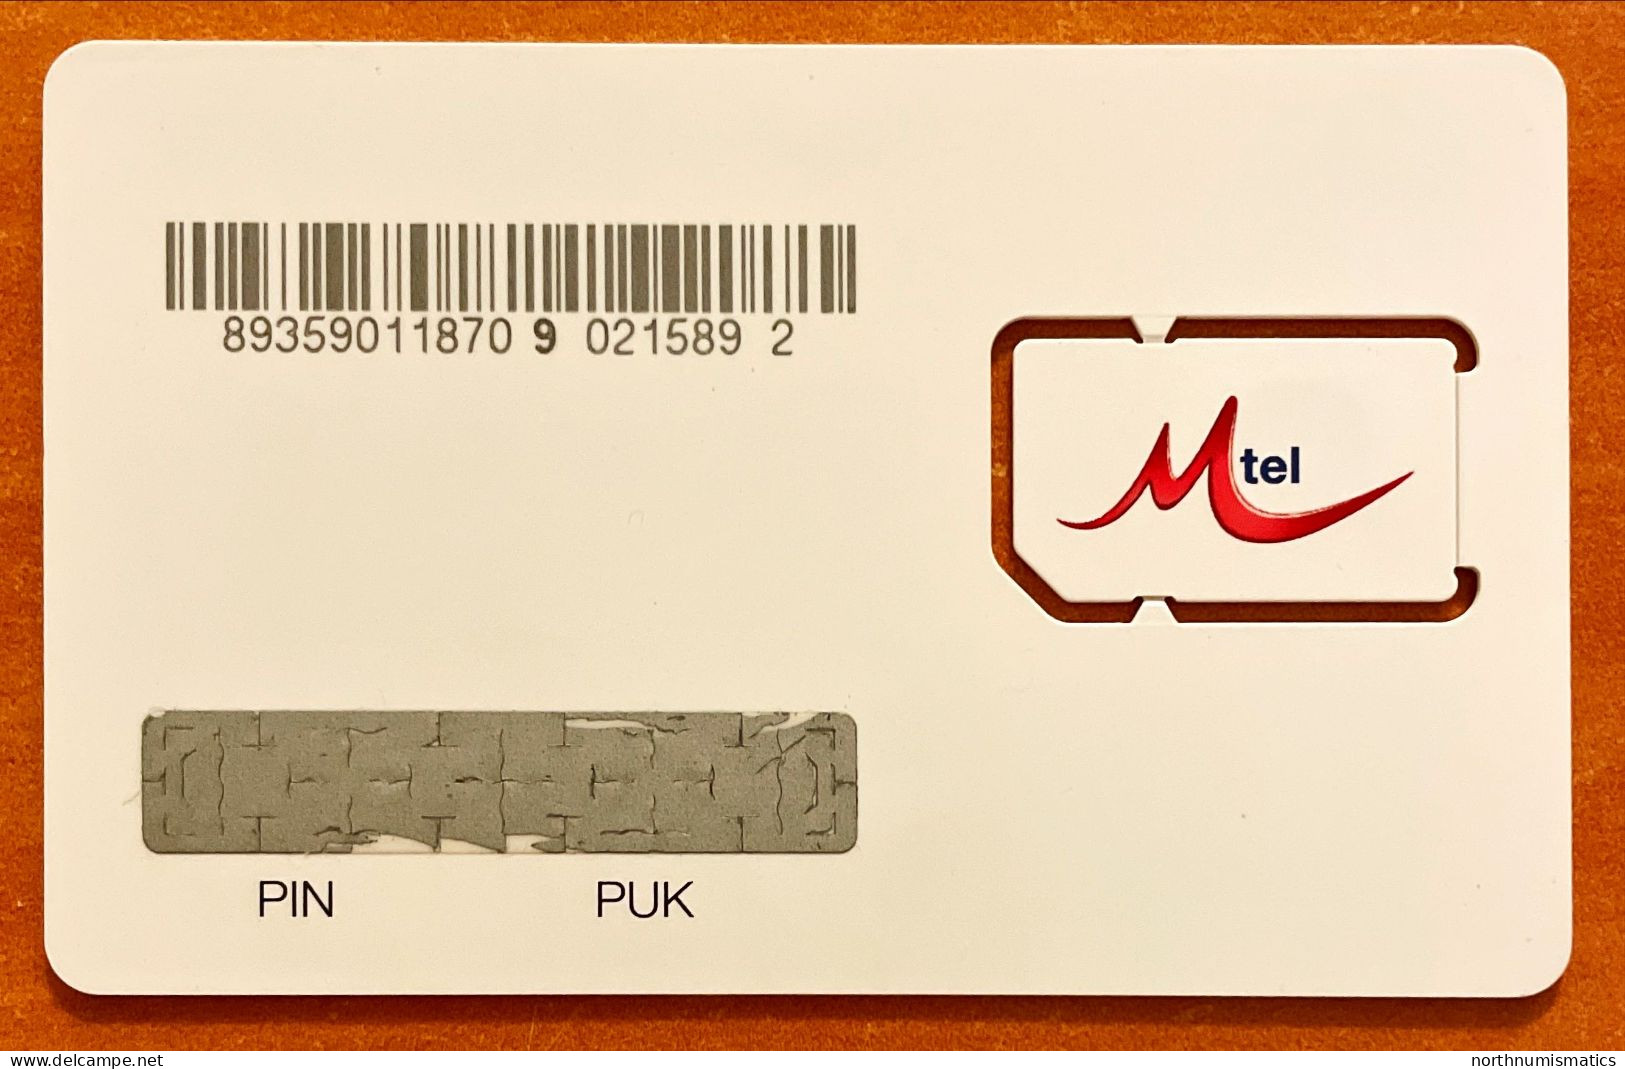 Mtel  Gsm  Original Chip Sim Card Unused - Colecciones